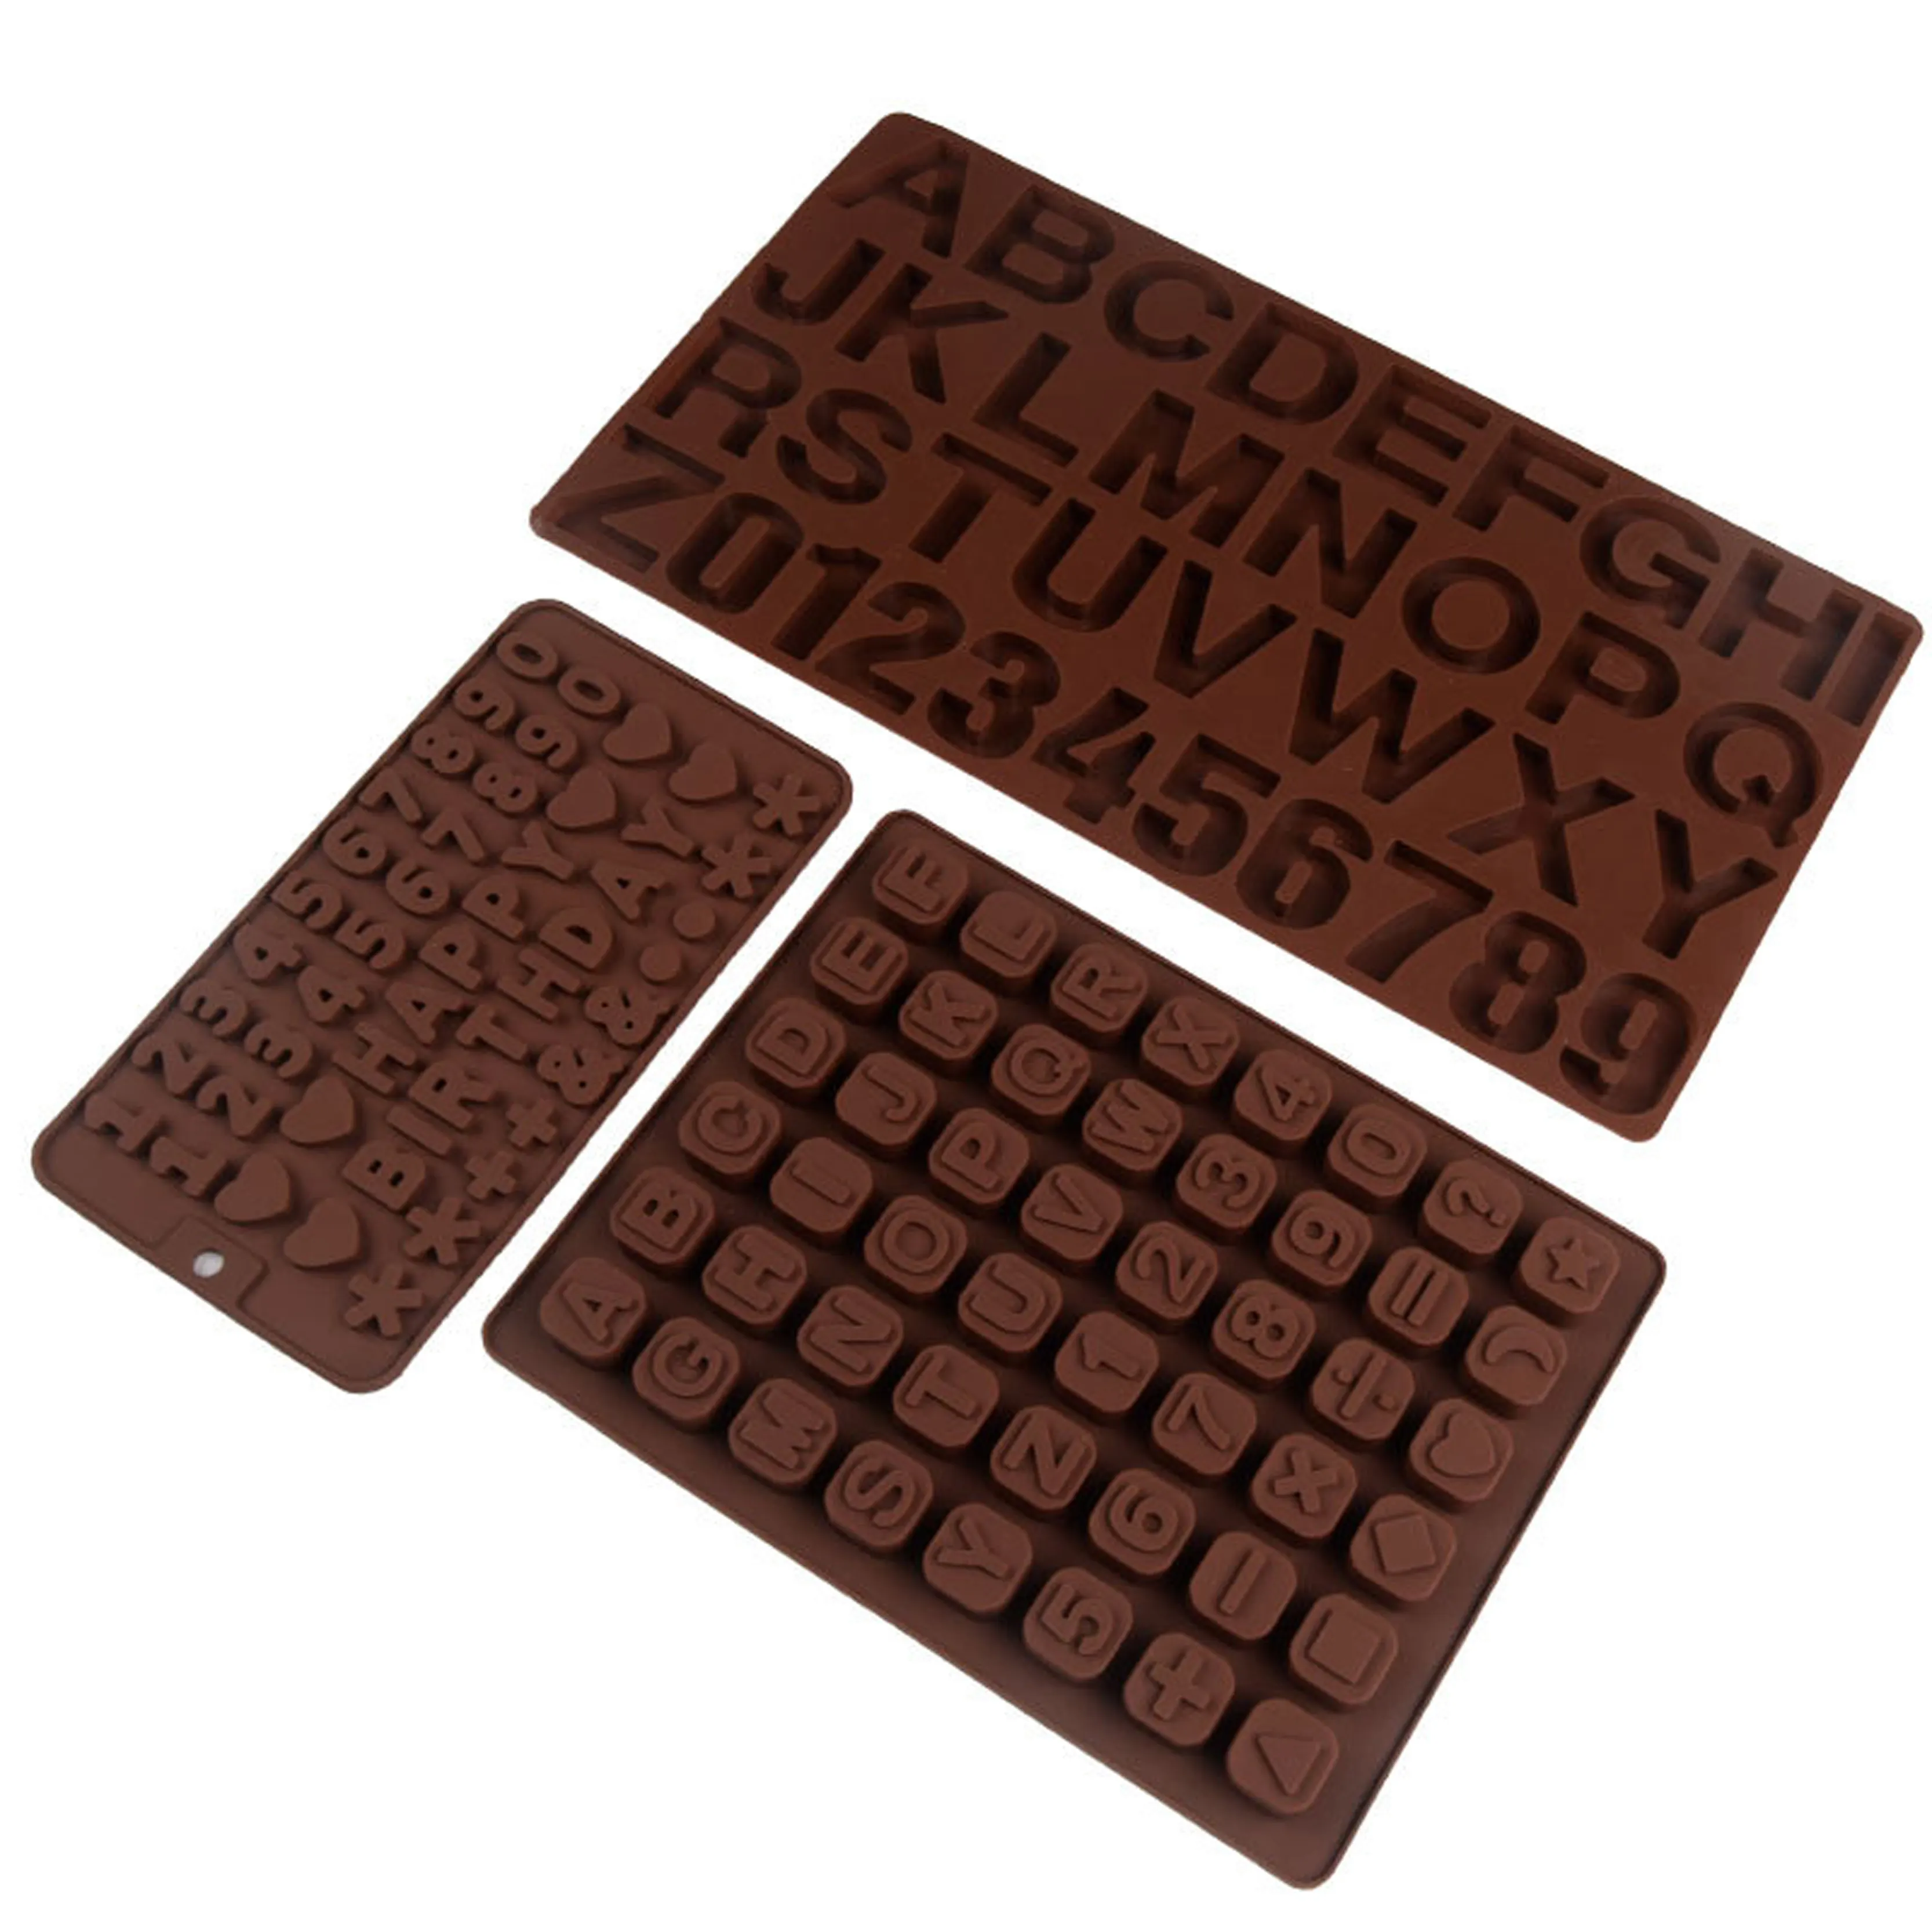 좋은 품질의 붙지 않는 3D 장식 DIY 베이킹 도구 실리콘 초콜릿 메이커 숫자 문자와 케이크 베이킹 금형